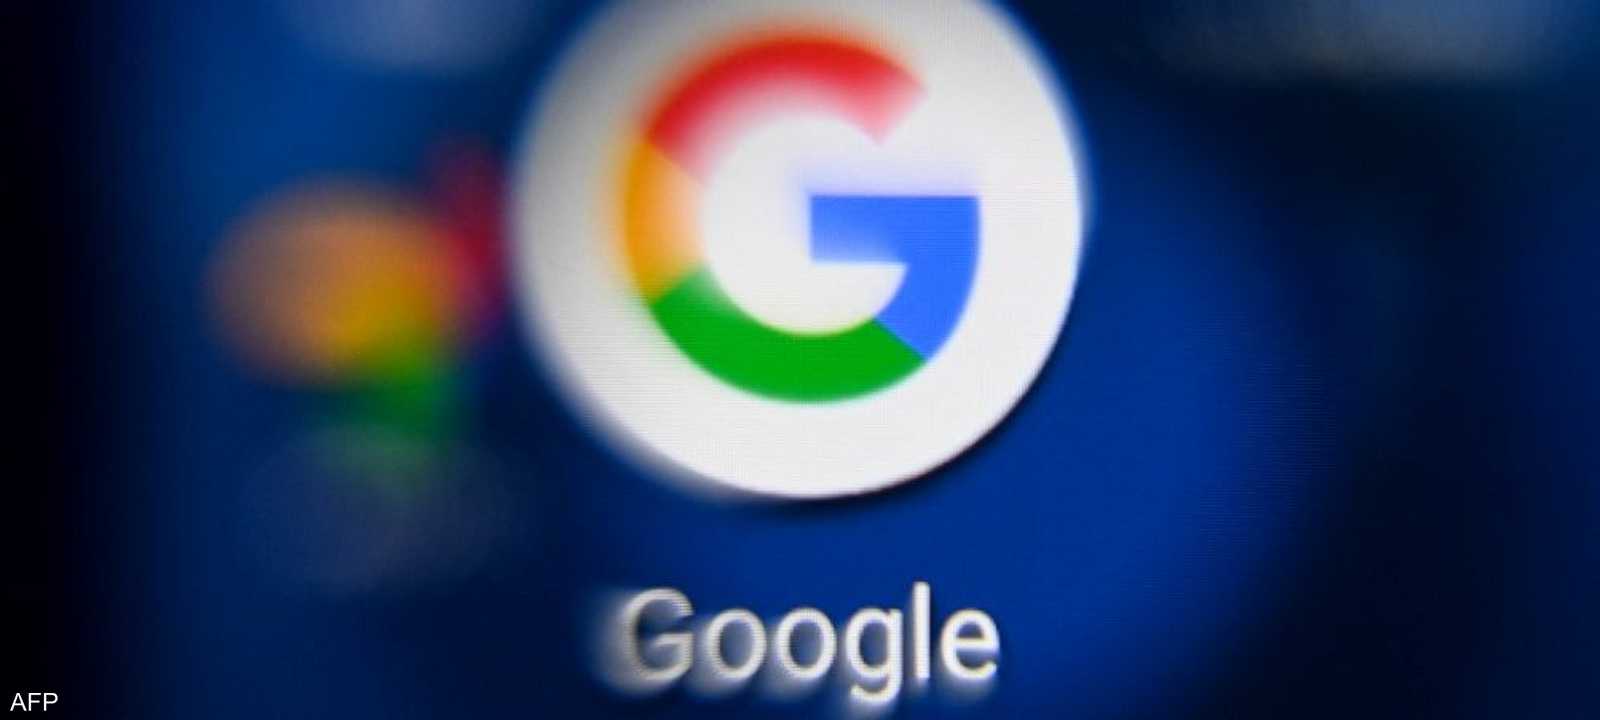 ألفابت مالكة غوغل تحقق إيرادات دون التوقعات من الإعلانات